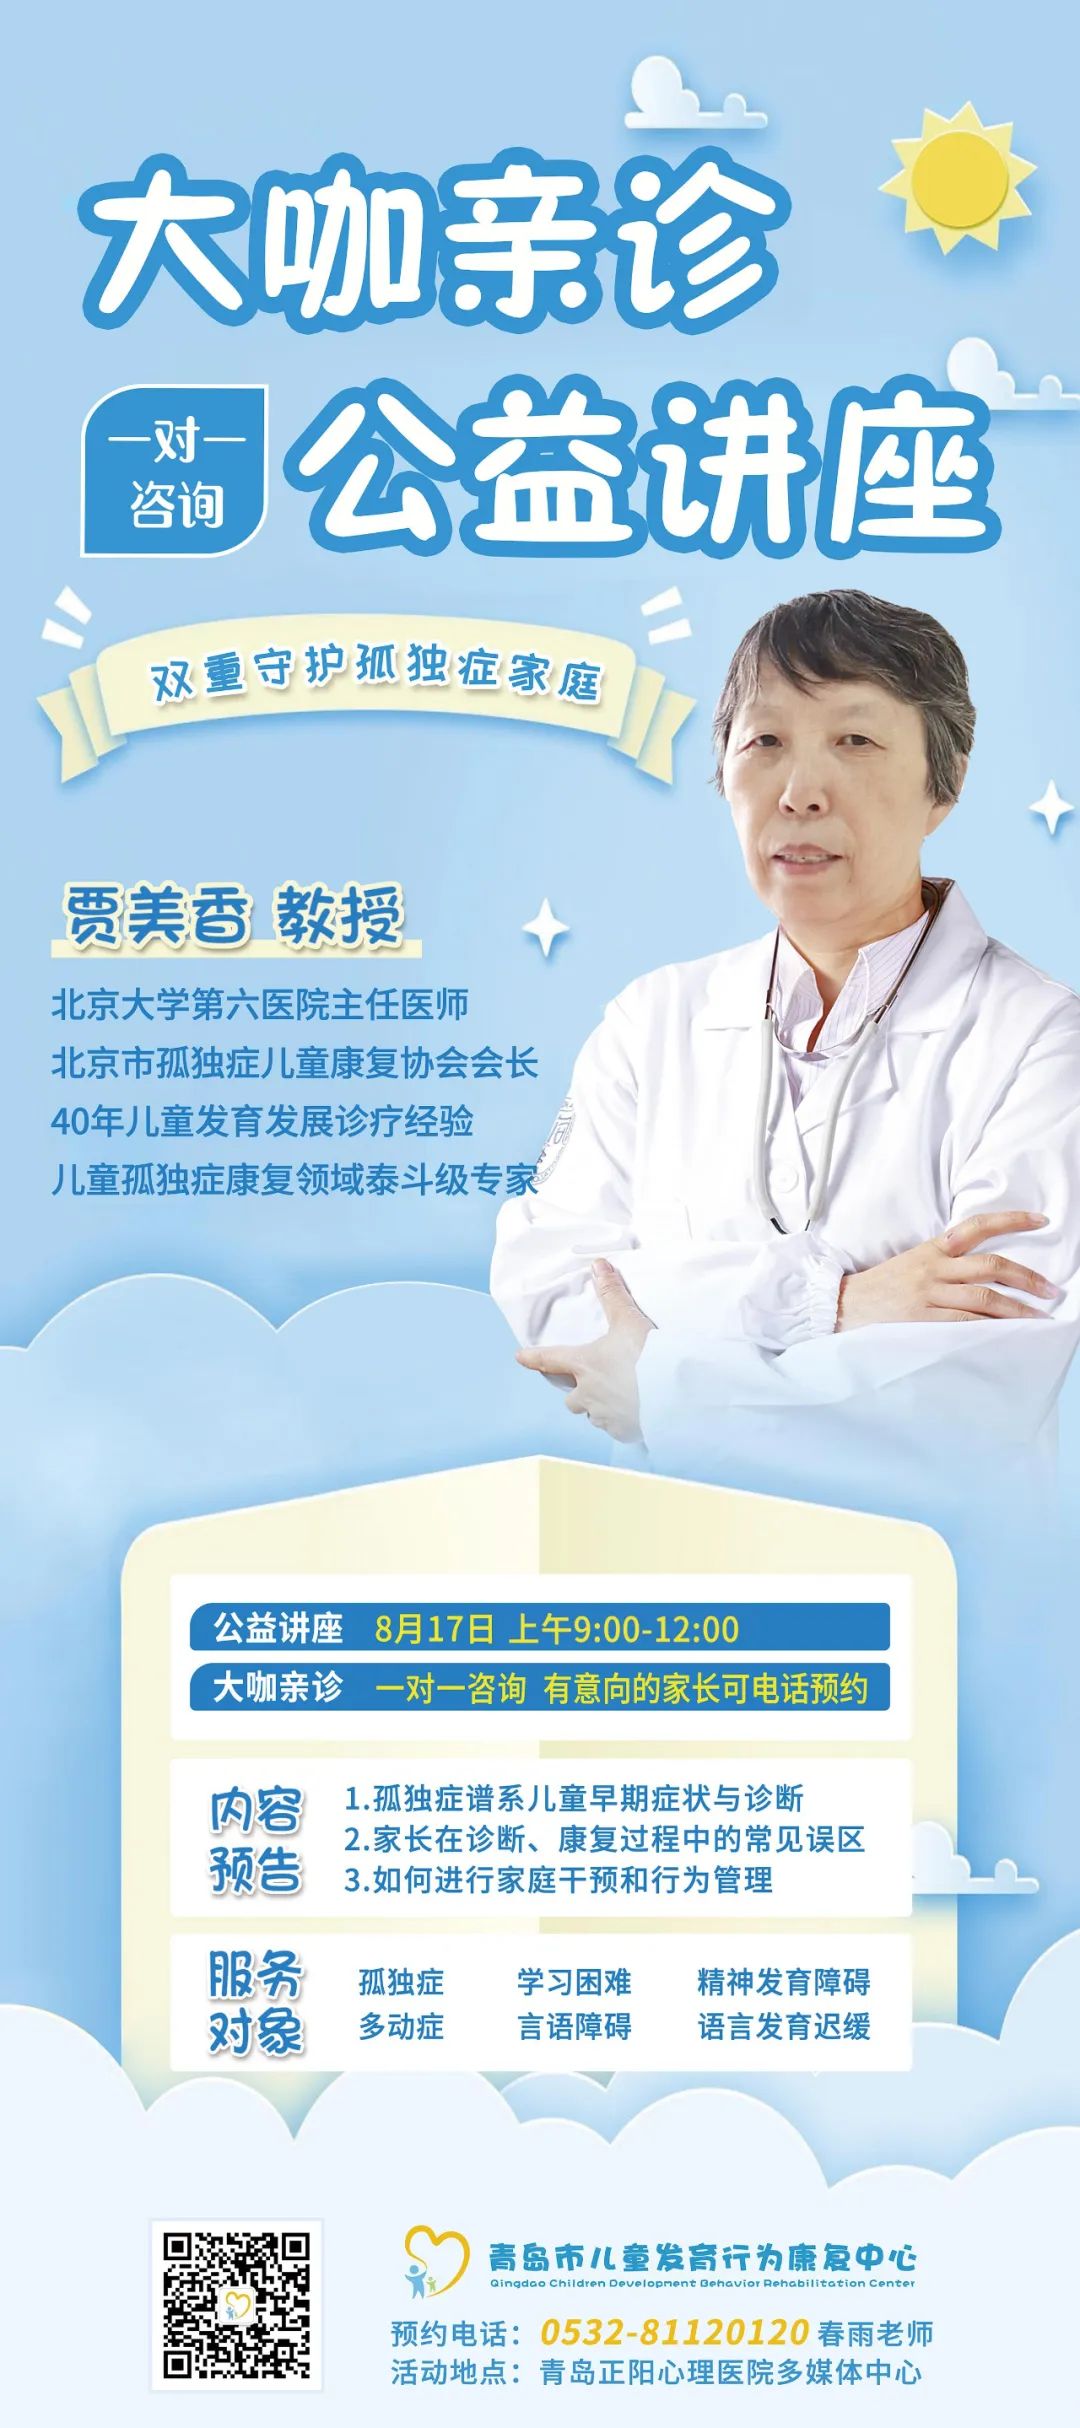 青岛市儿童发育行为康复中心特邀北京孤独症专家贾美香教授一对一公益讲座